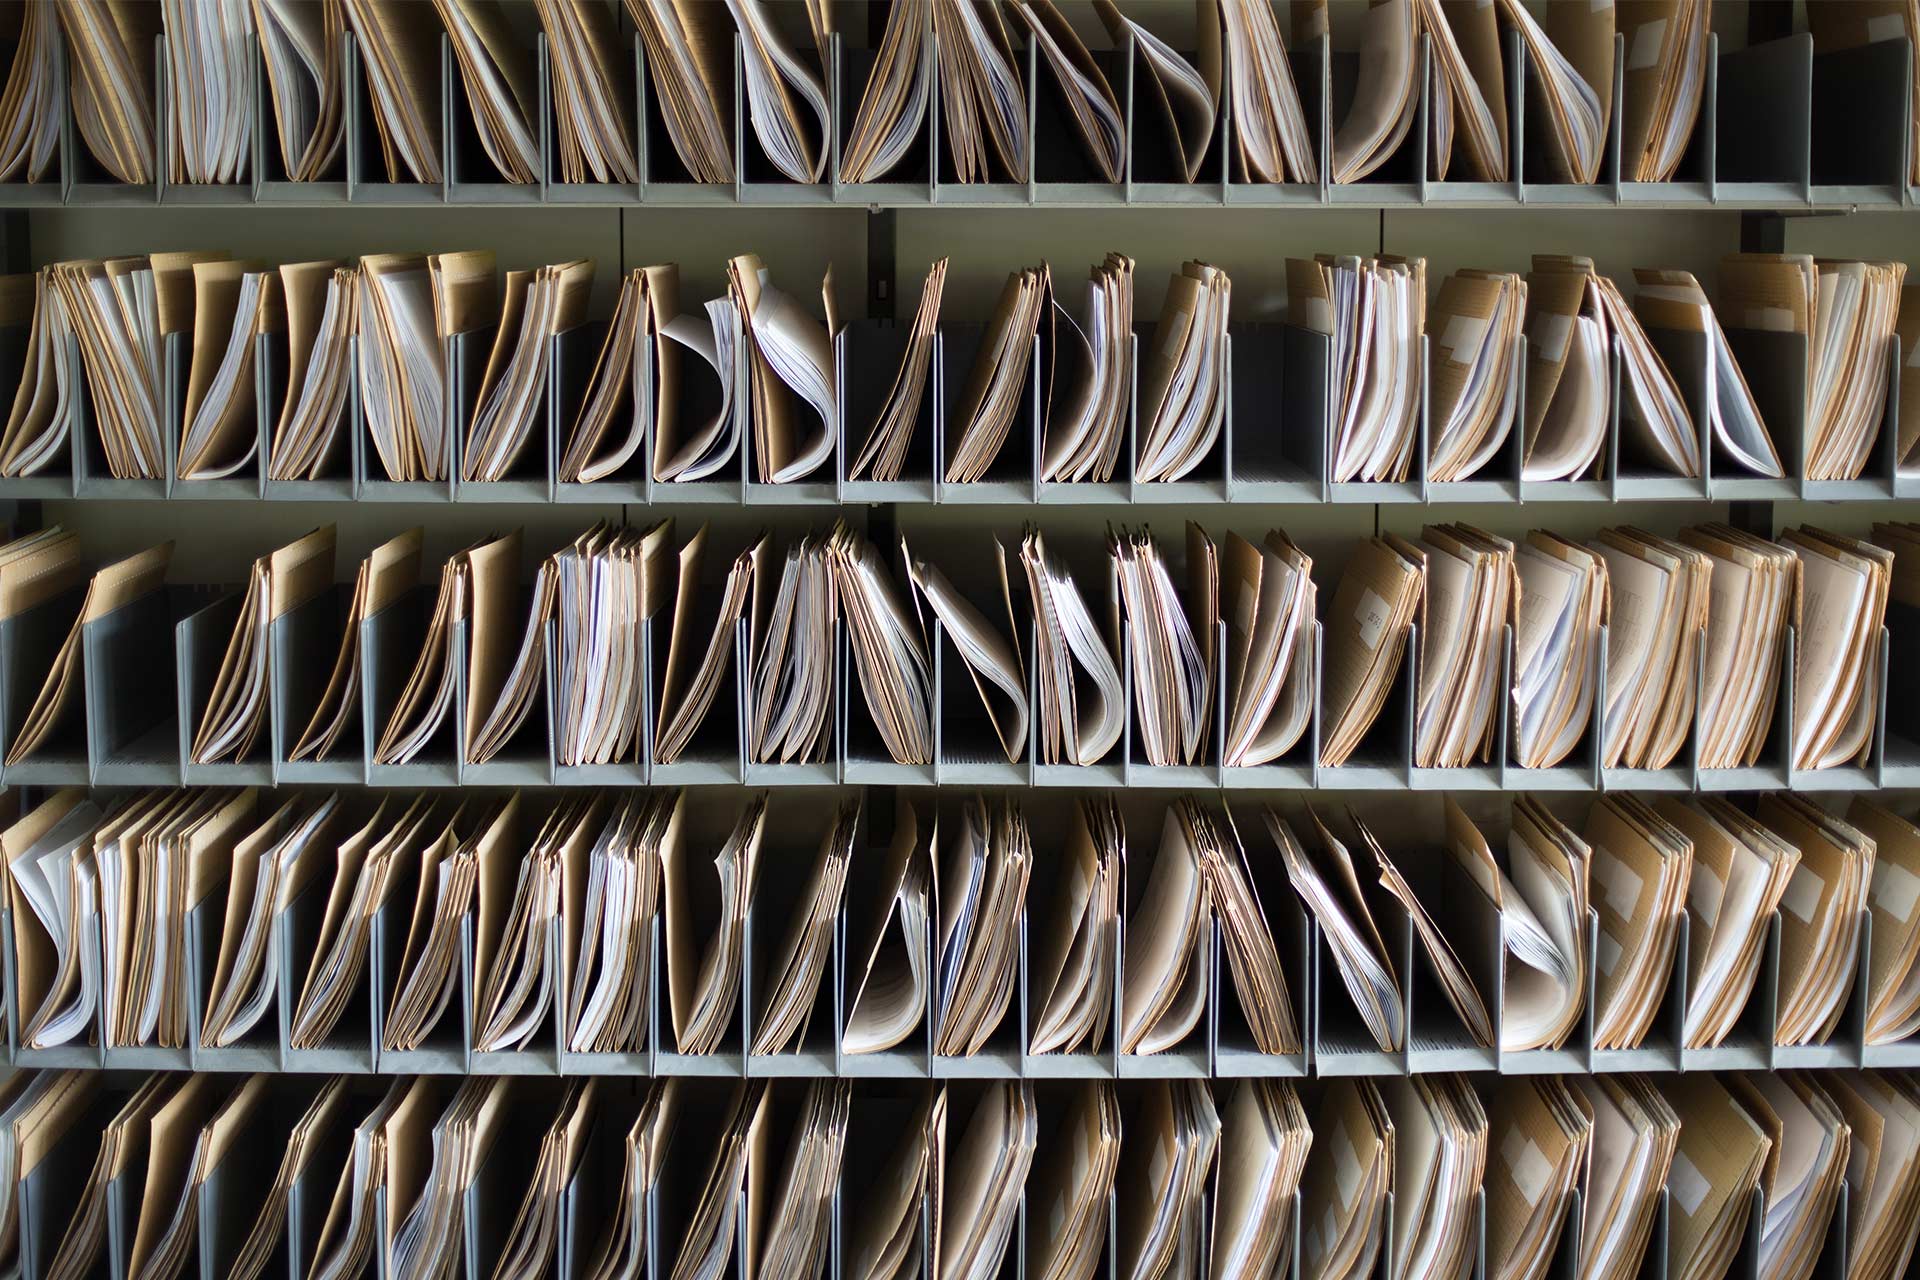 Archivos en papel almacenados como registros en representación del proceso de usar la copia de seguridad del ordenador como método de archivado